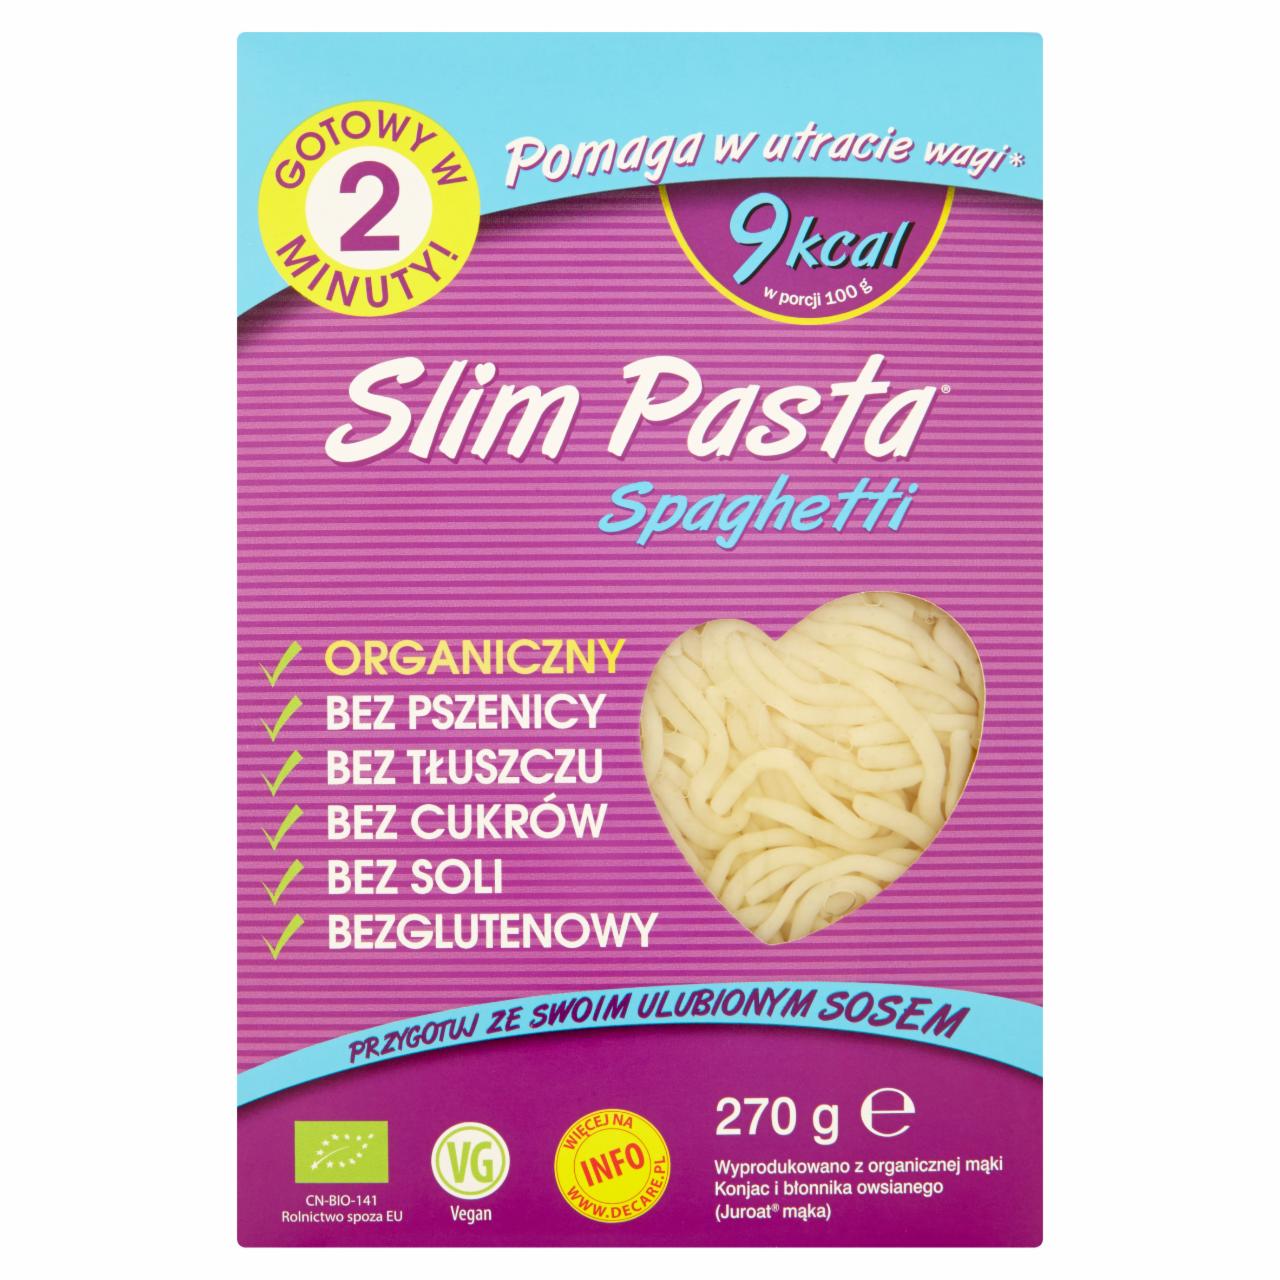 Zdjęcia - Slim Pasta Spaghetti Makaron z mąki konjac 270 g